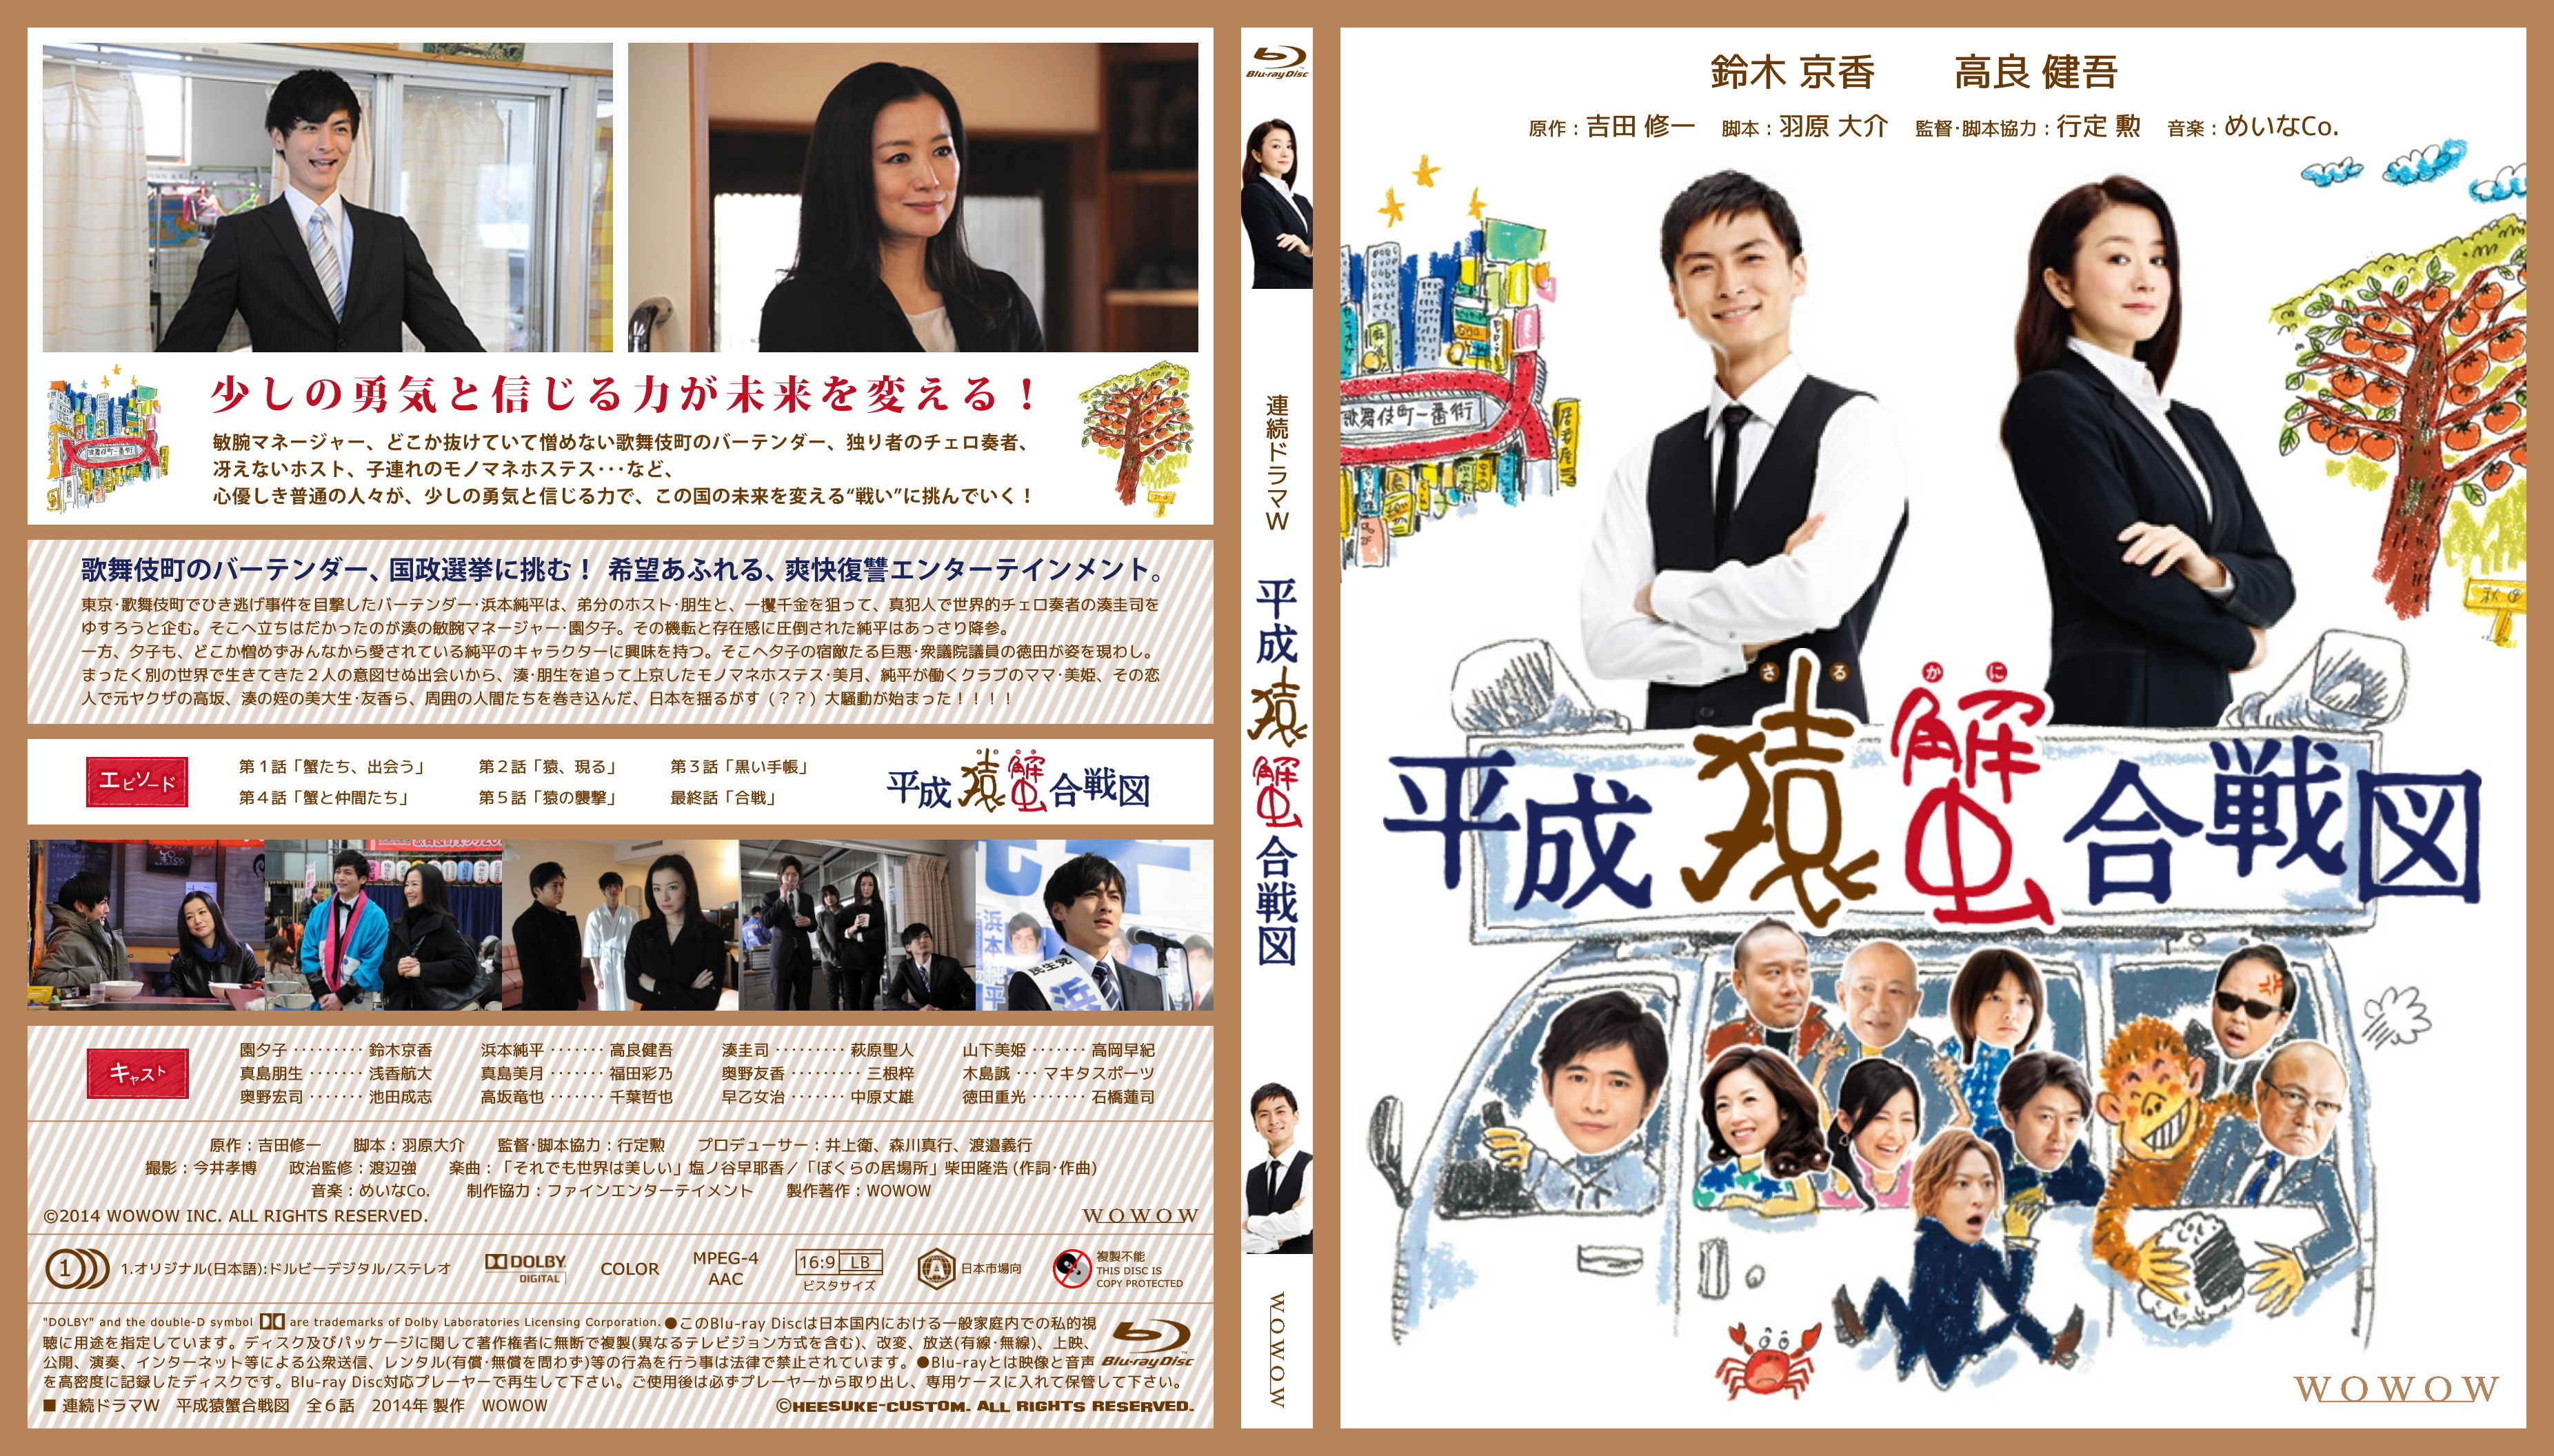 連続ドラマW 平成猿蟹合戦図 [DVD] w17b8b5